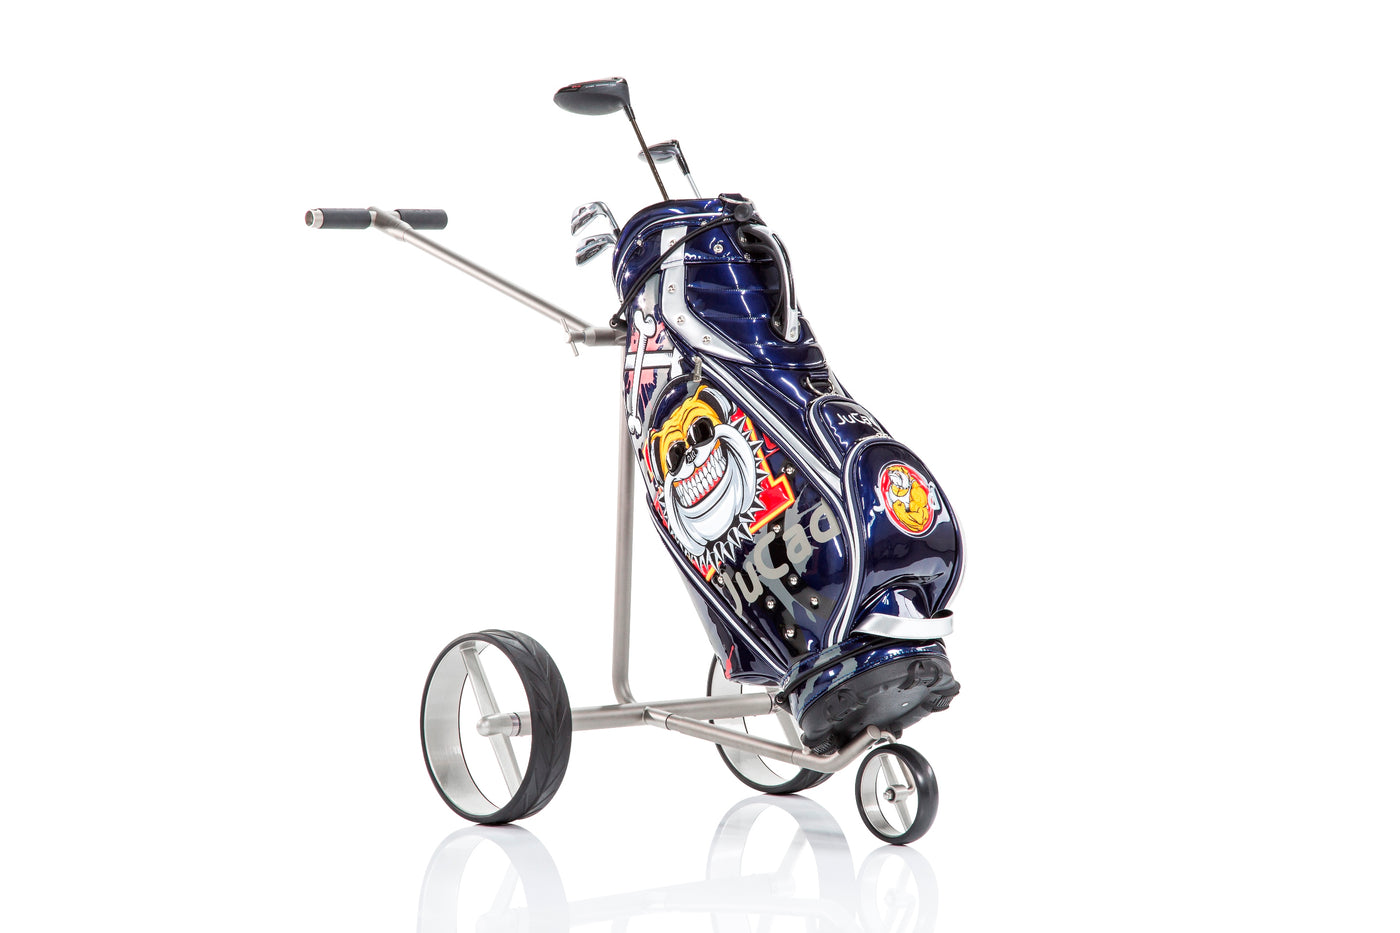 JuCad Golfbag Luxury - the extravagant eye-catcher